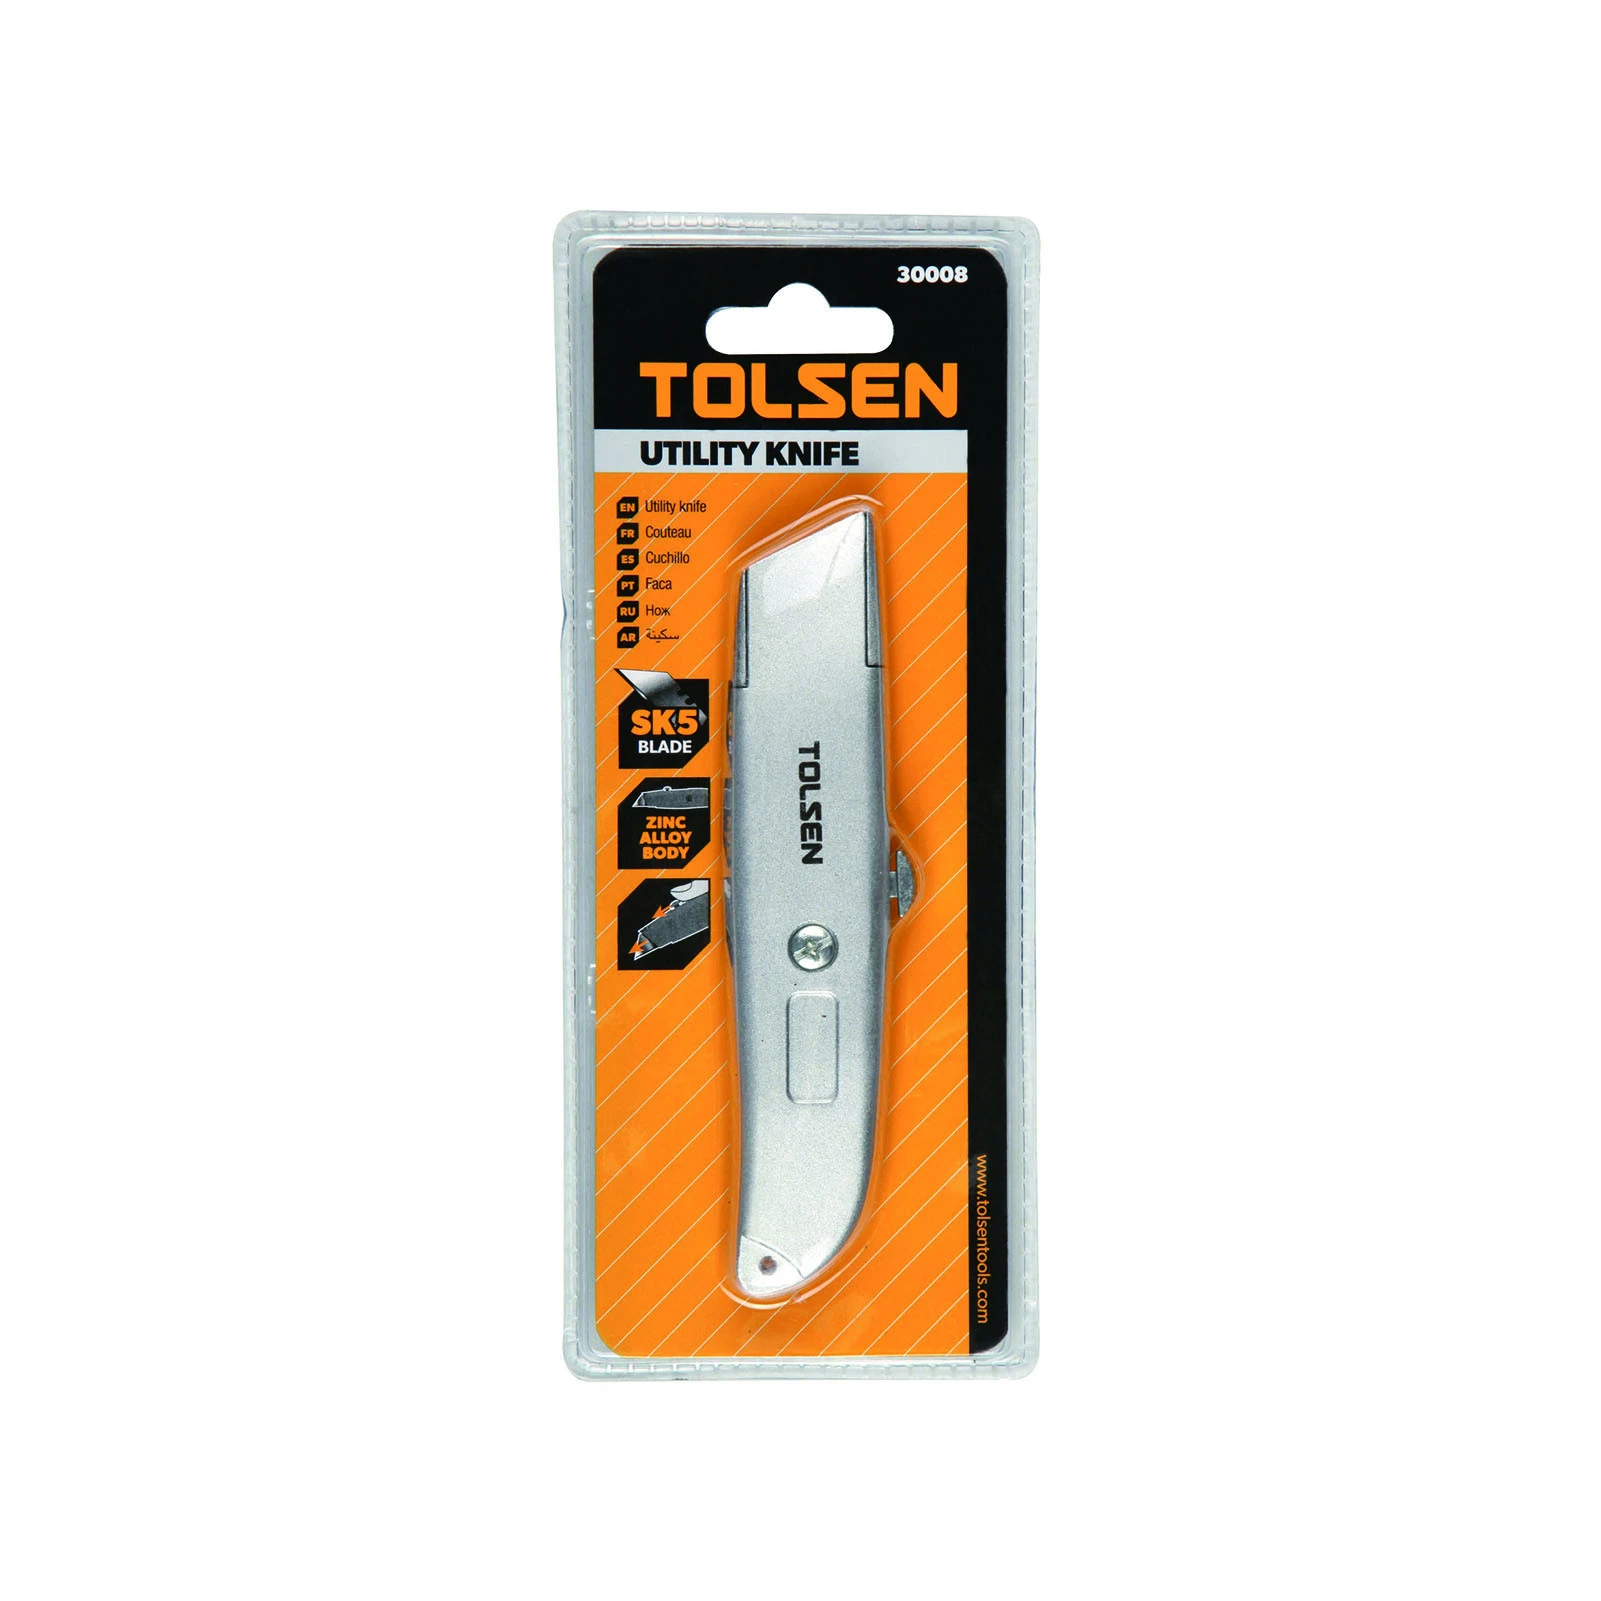 TOLSEN UTILITY KNIFE 30008